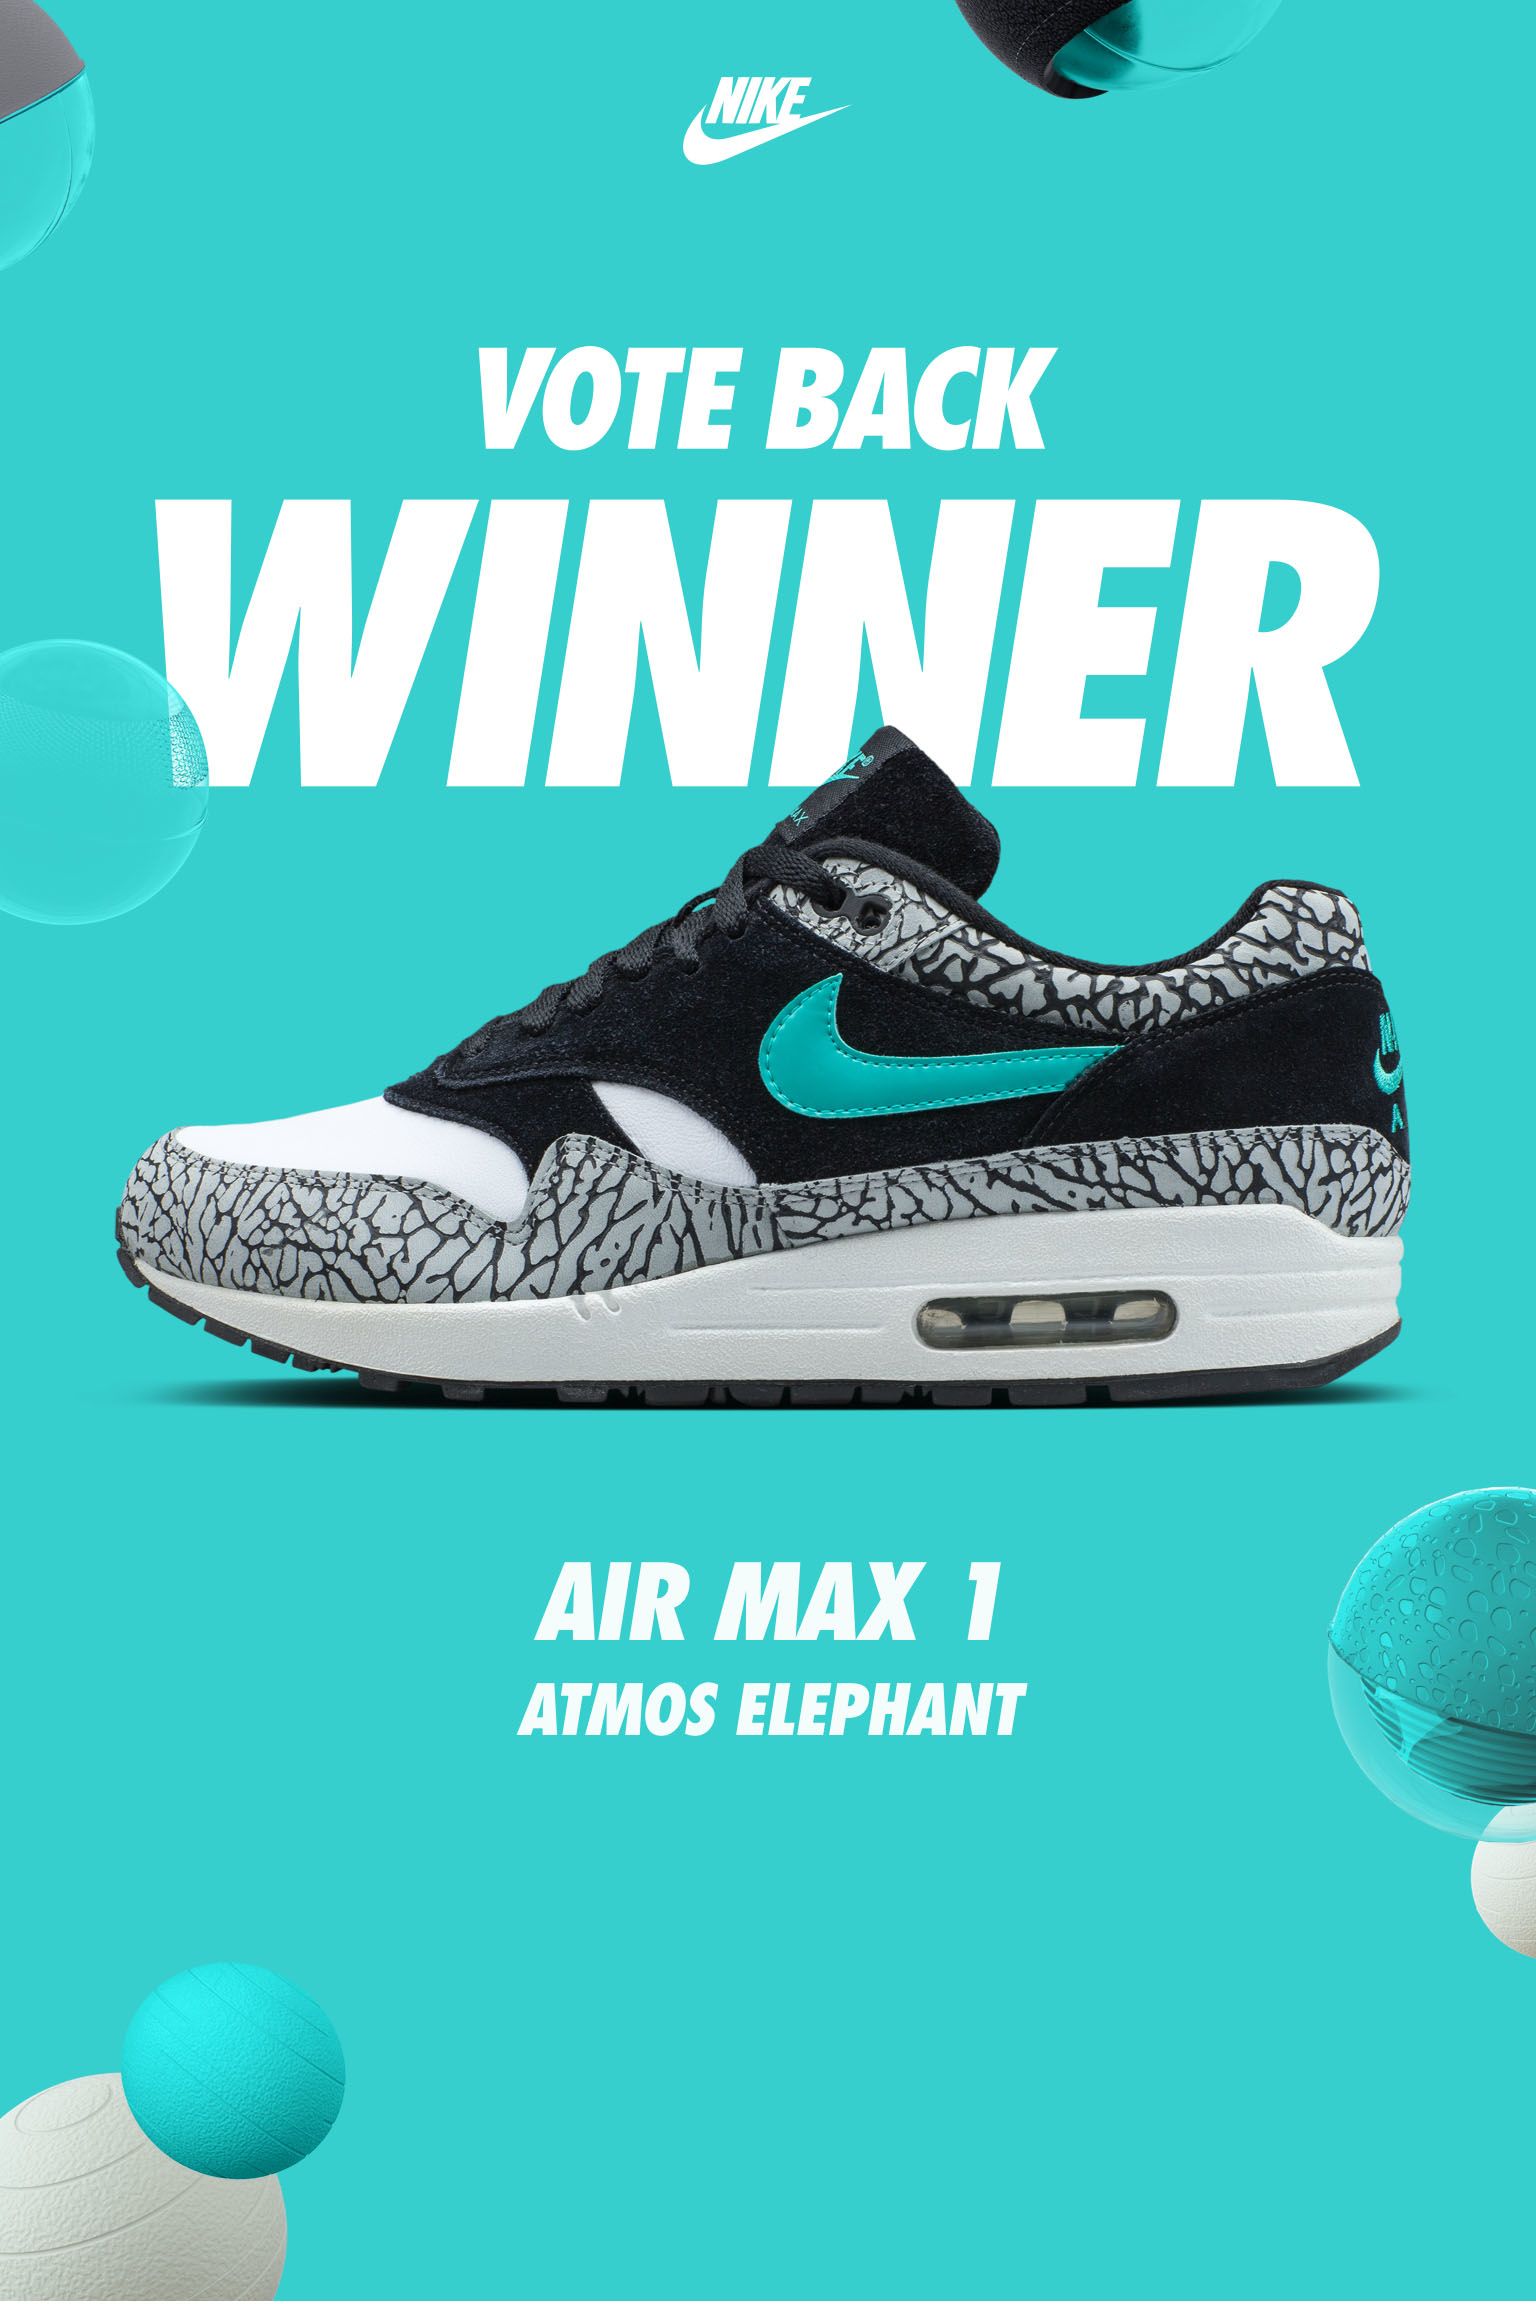 Nike Air Max Vote Back Winner. Nike SNKRS